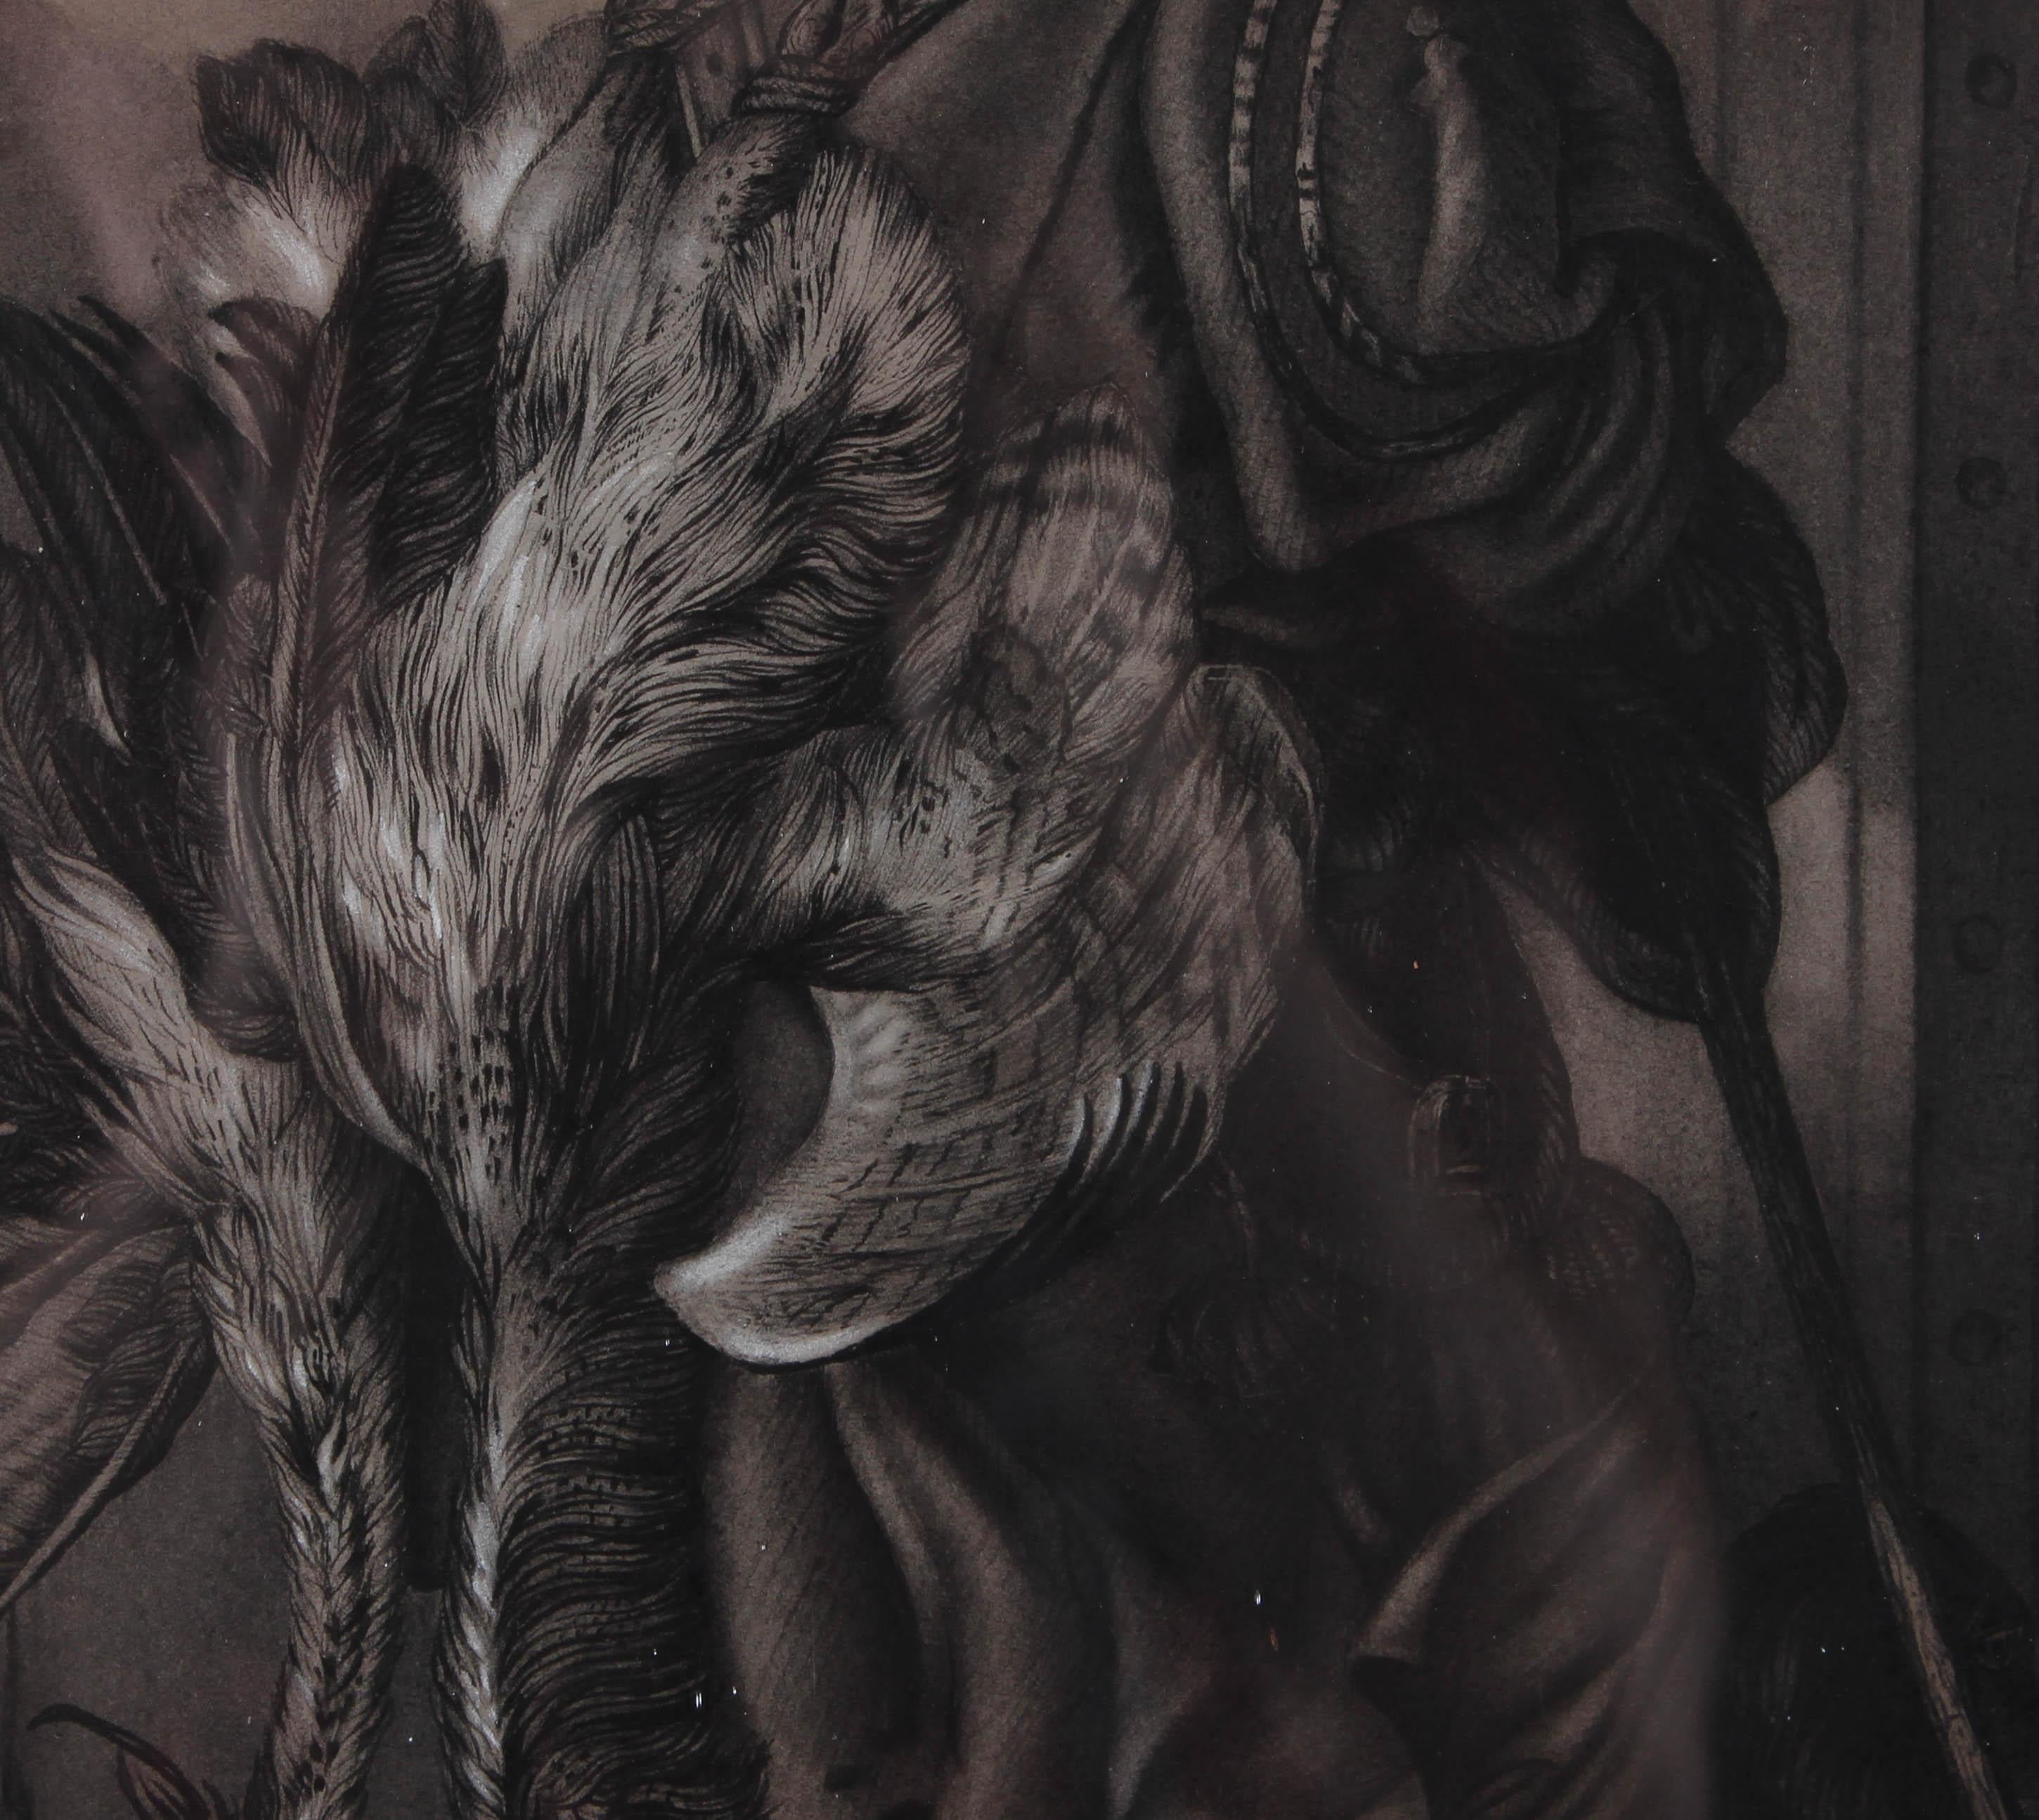 Un dessin au fusain et à la craie en grisaille représentant un homme revenant d'une journée de chasse à la grue, son sac en bandoulière. Le dessin est très détaillé et utilise une excellente perception des tons pour créer de la profondeur dans la